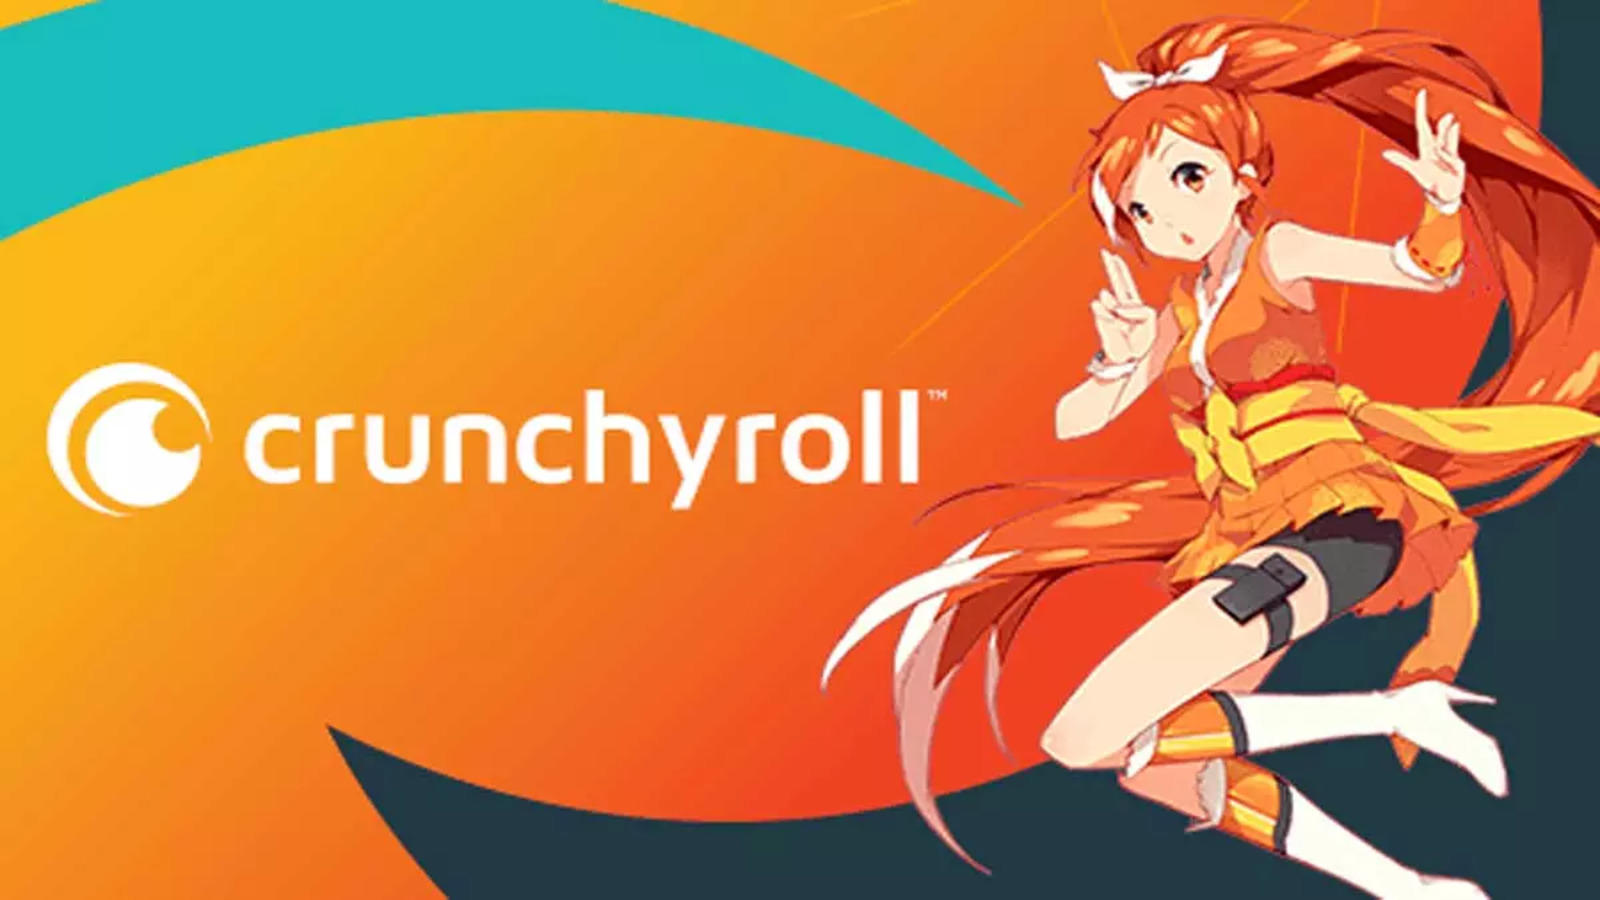 Crunchyroll - Microsoft Apps